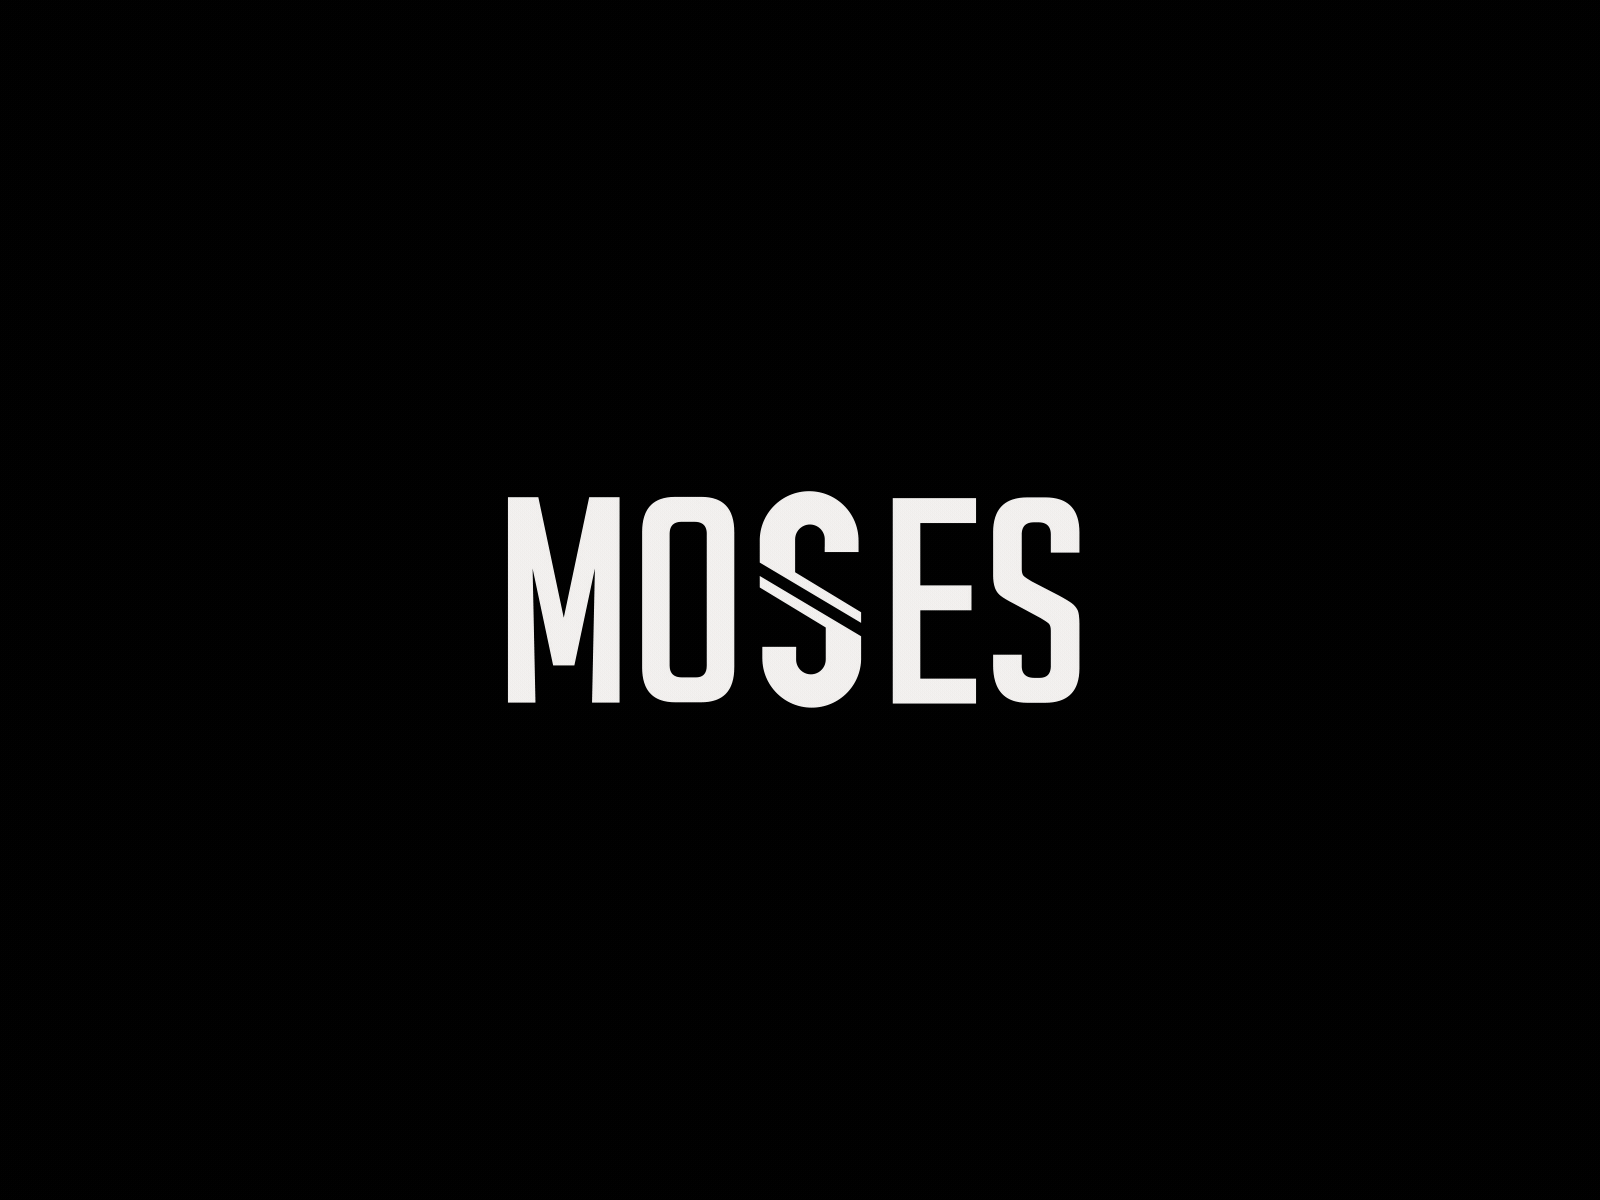 Moses Logo Animation